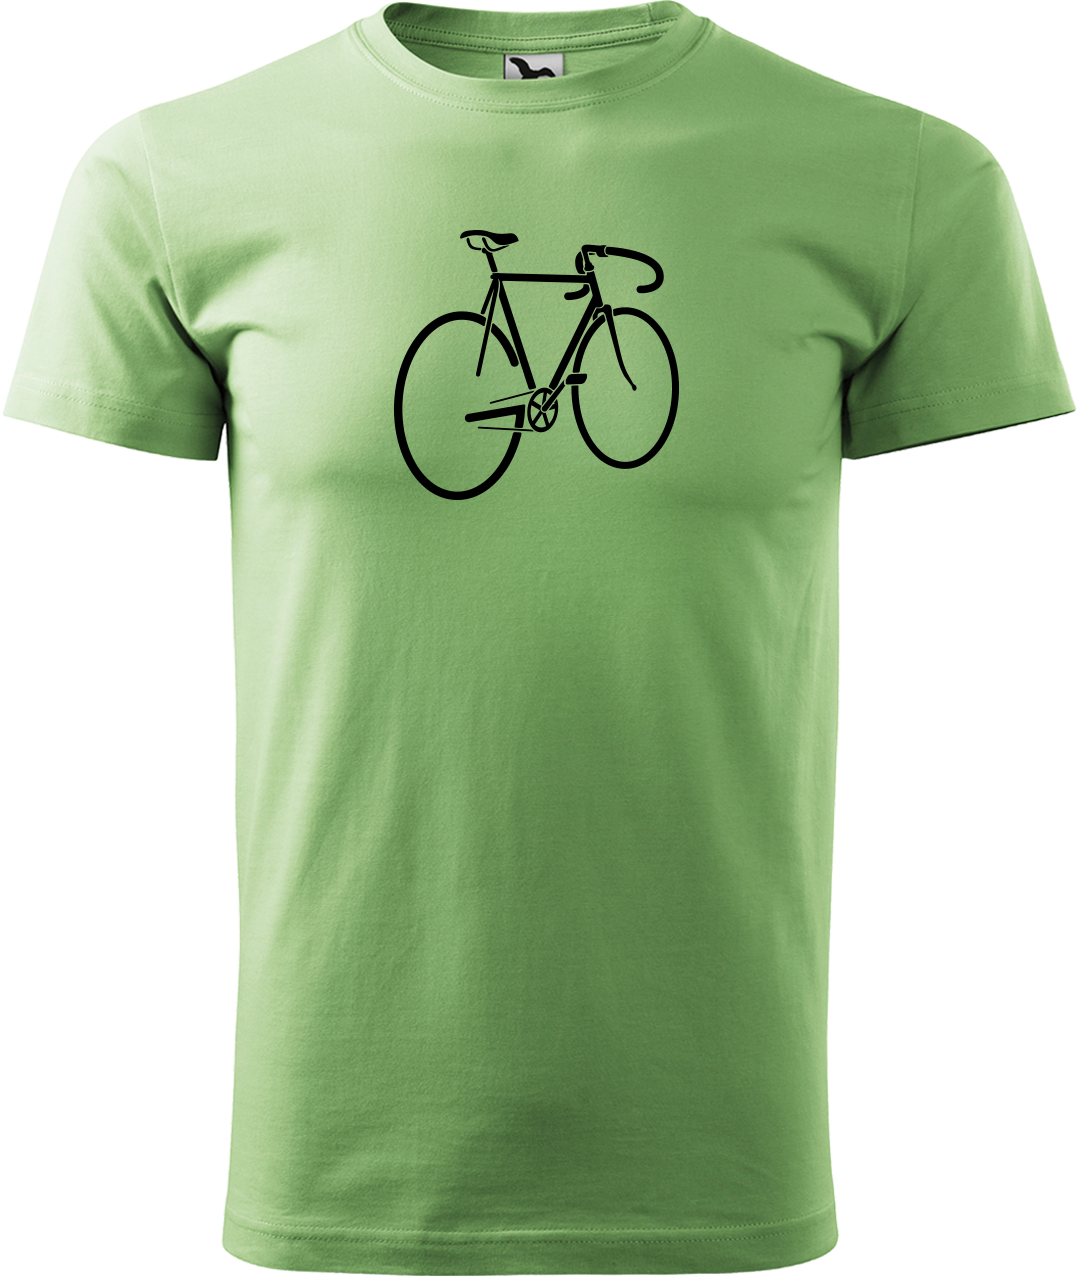 Pánské tričko s kolem - Pánské kolo Velikost: M, Barva: Trávově zelená (39)